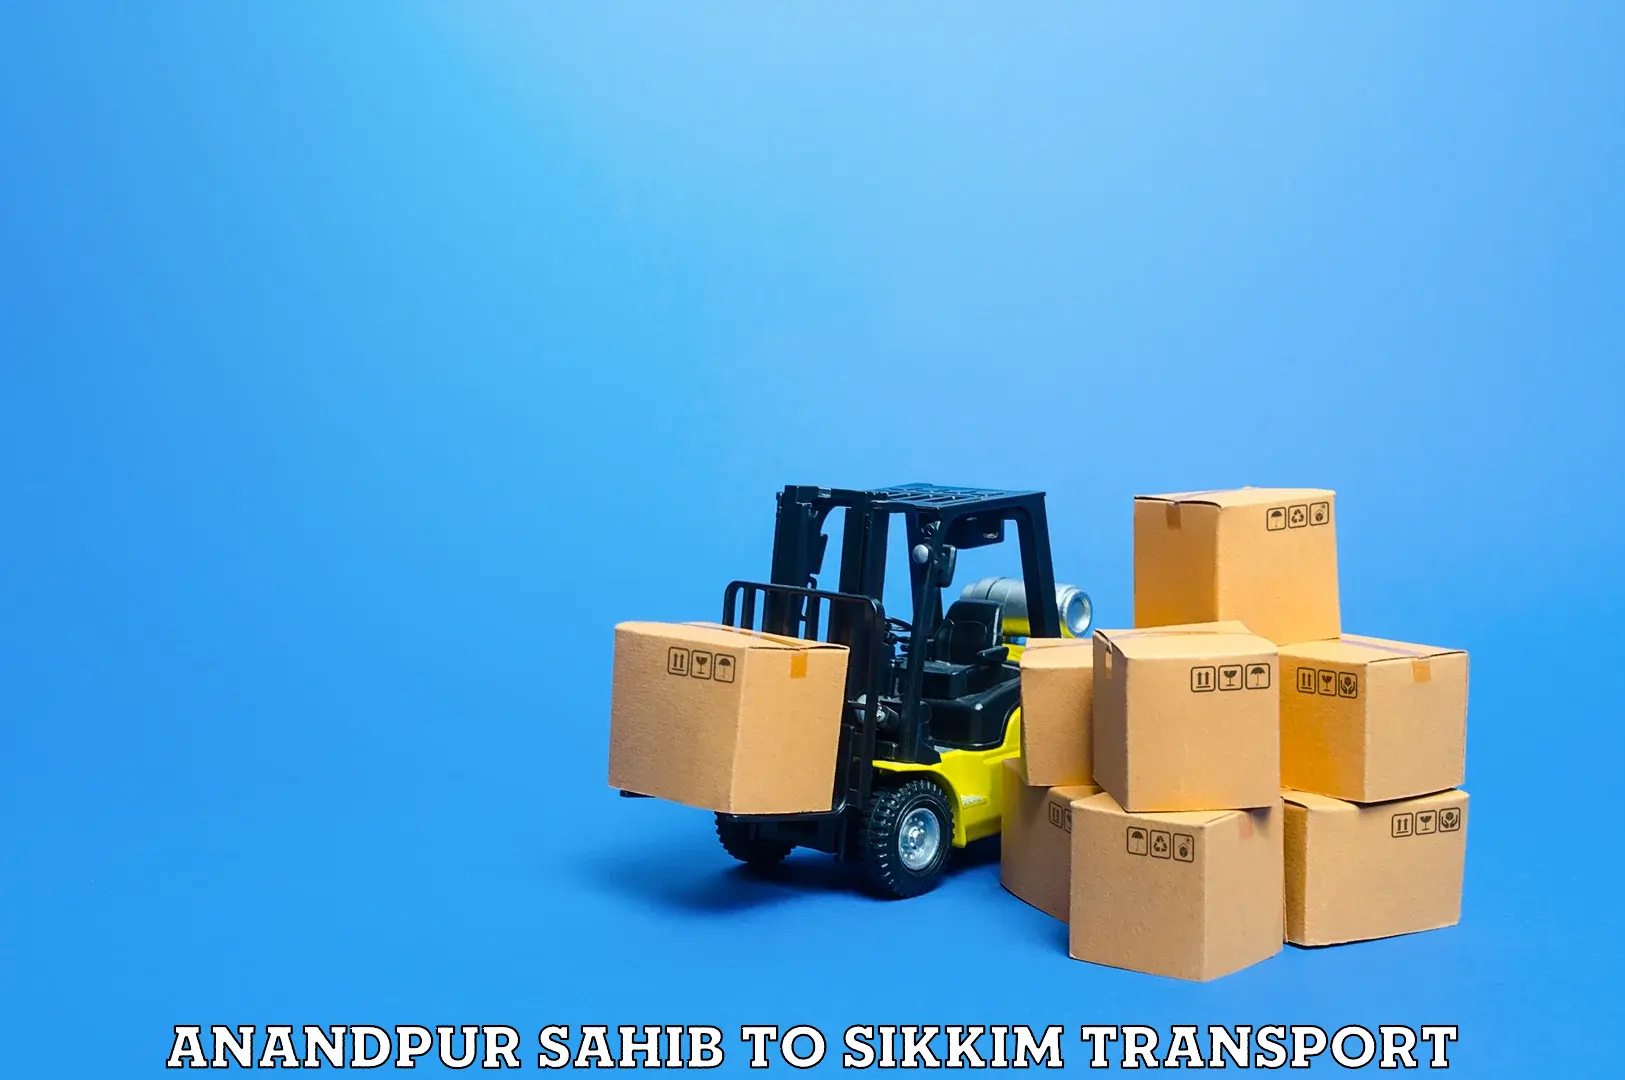 All India transport service Anandpur Sahib to Ranipool